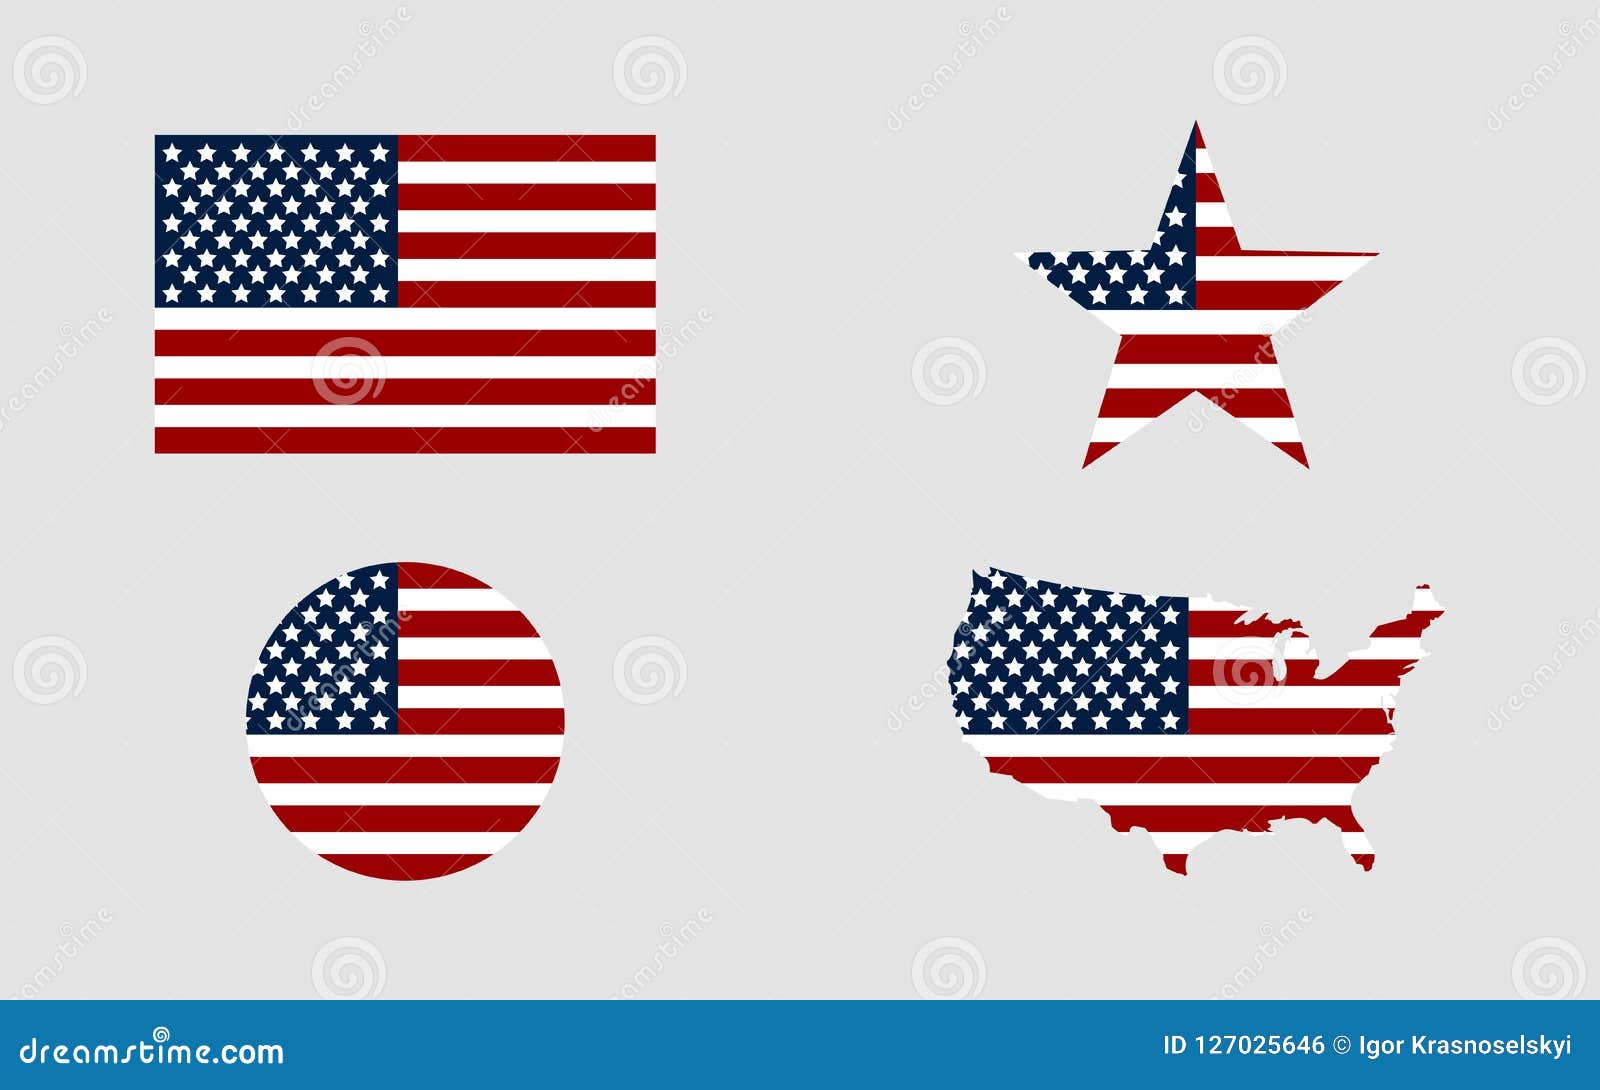 États-Unis Hissflagge américaine drapeaux drapeaux 60x90cm